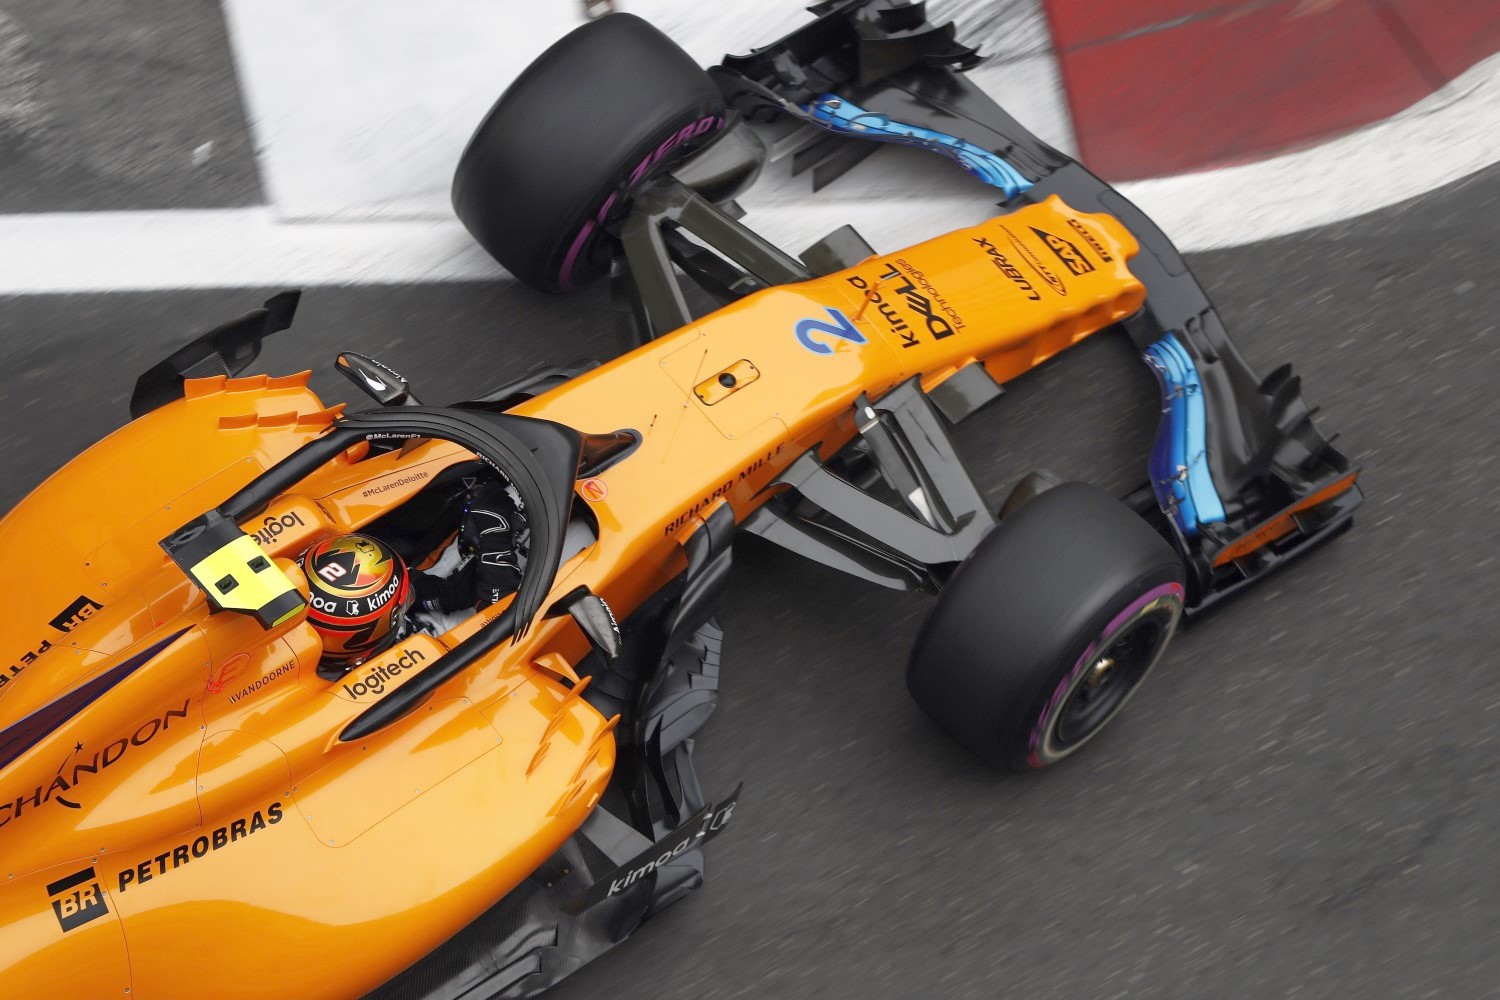 Stoffel Vandoorne in the McLaren at Baku Friday